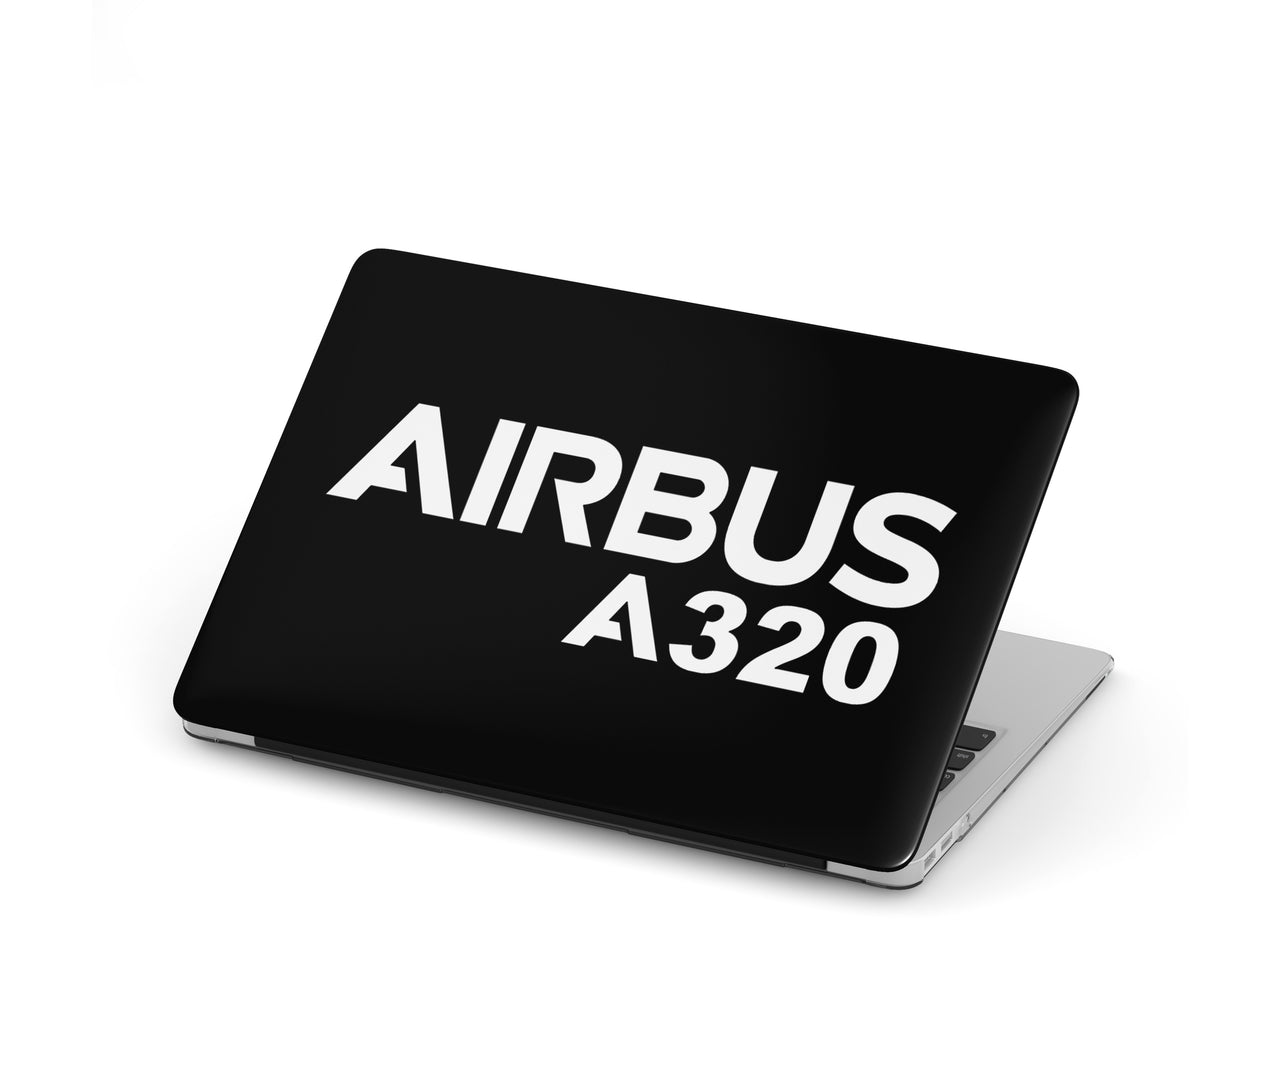 Airbus A320 & Text Designed Macbook Cases